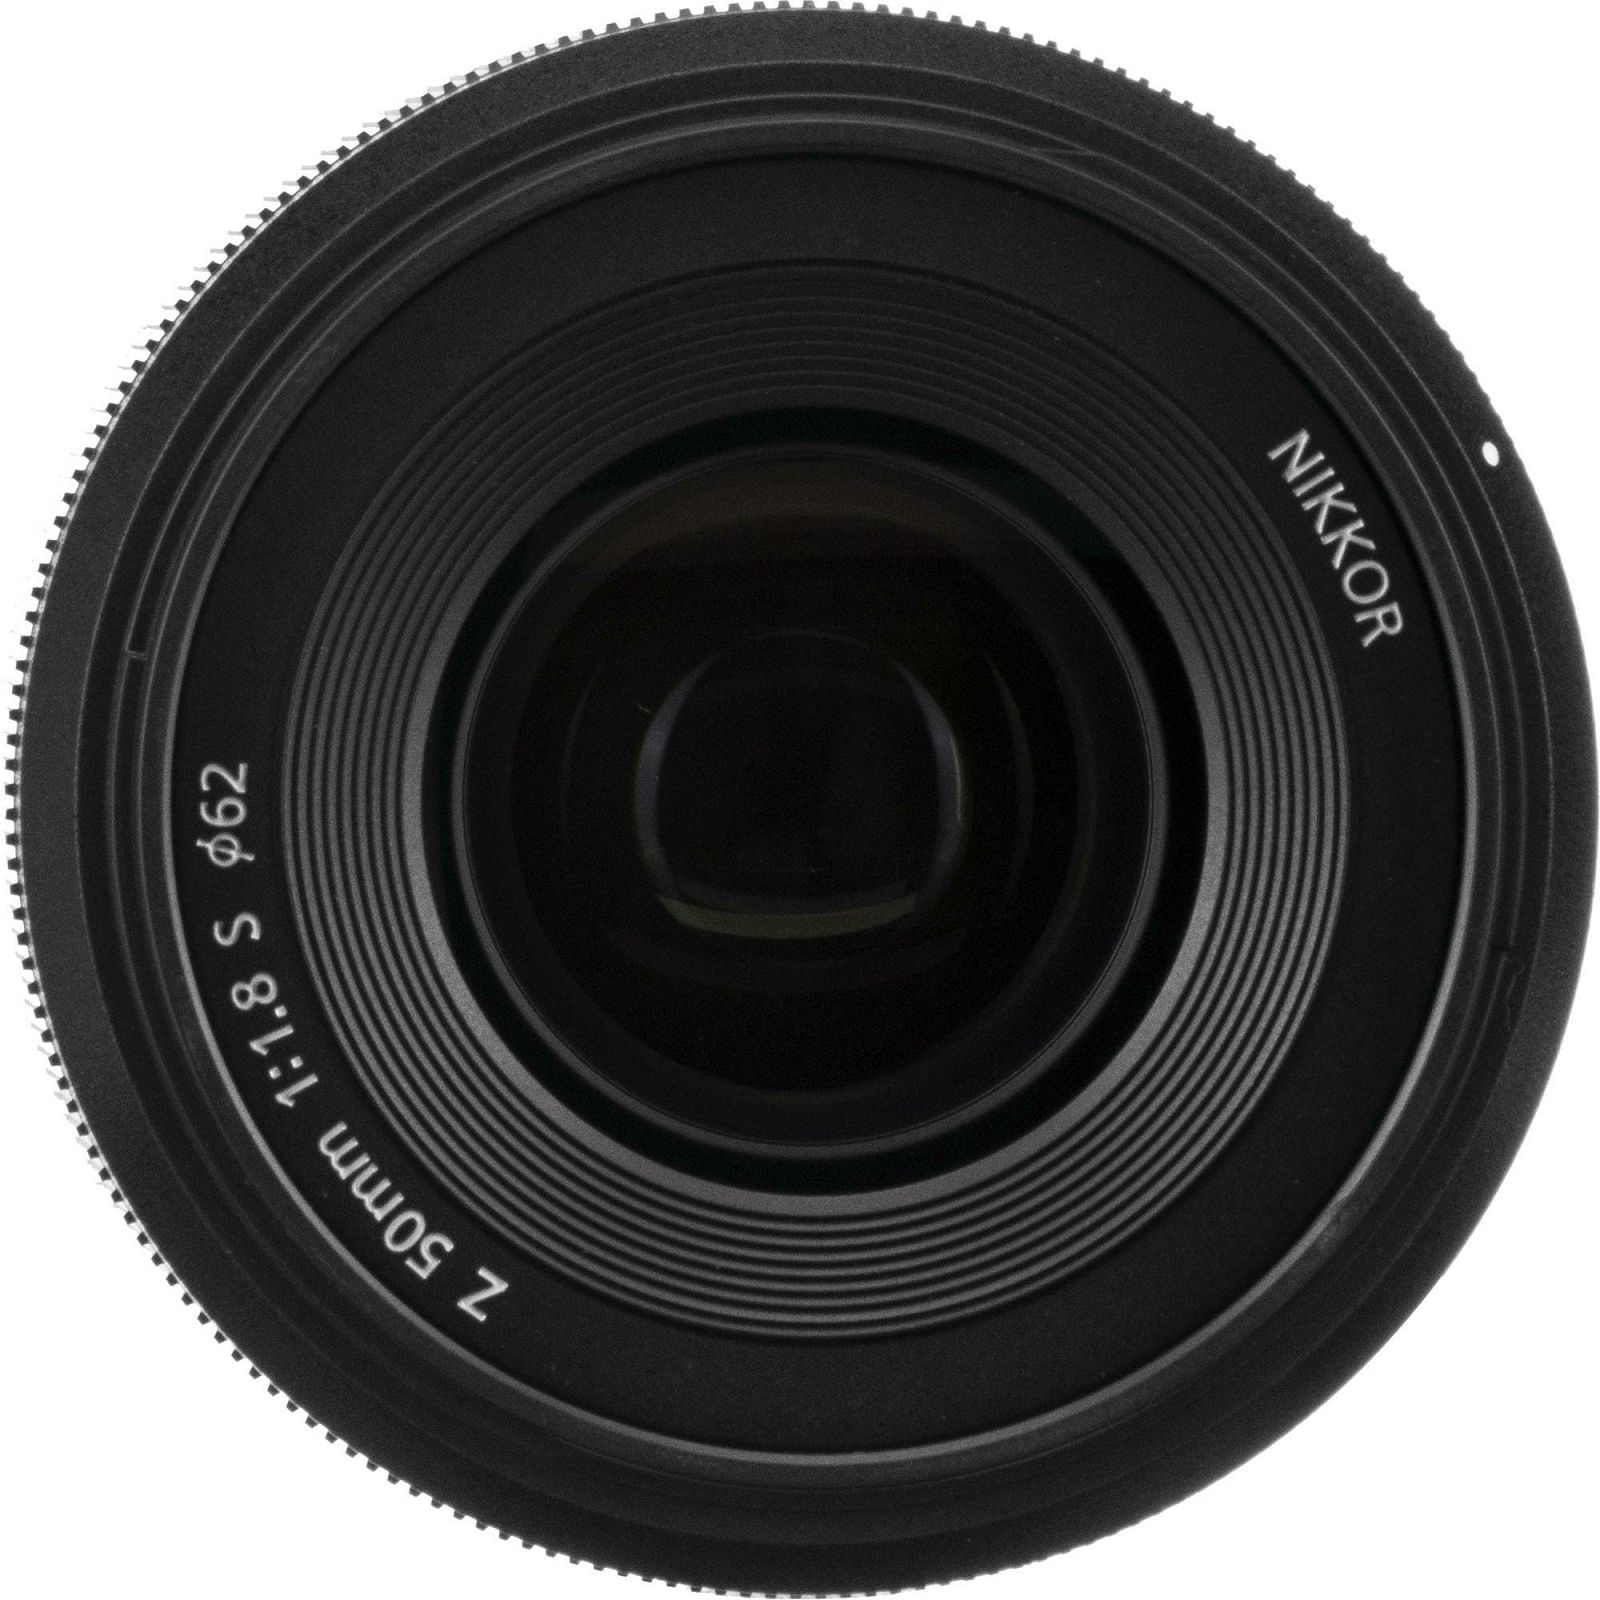 Nikon Z 50mm f/1.8 S FX Nikkor objektiv fiksne žarišne duljine (JMA001DA)